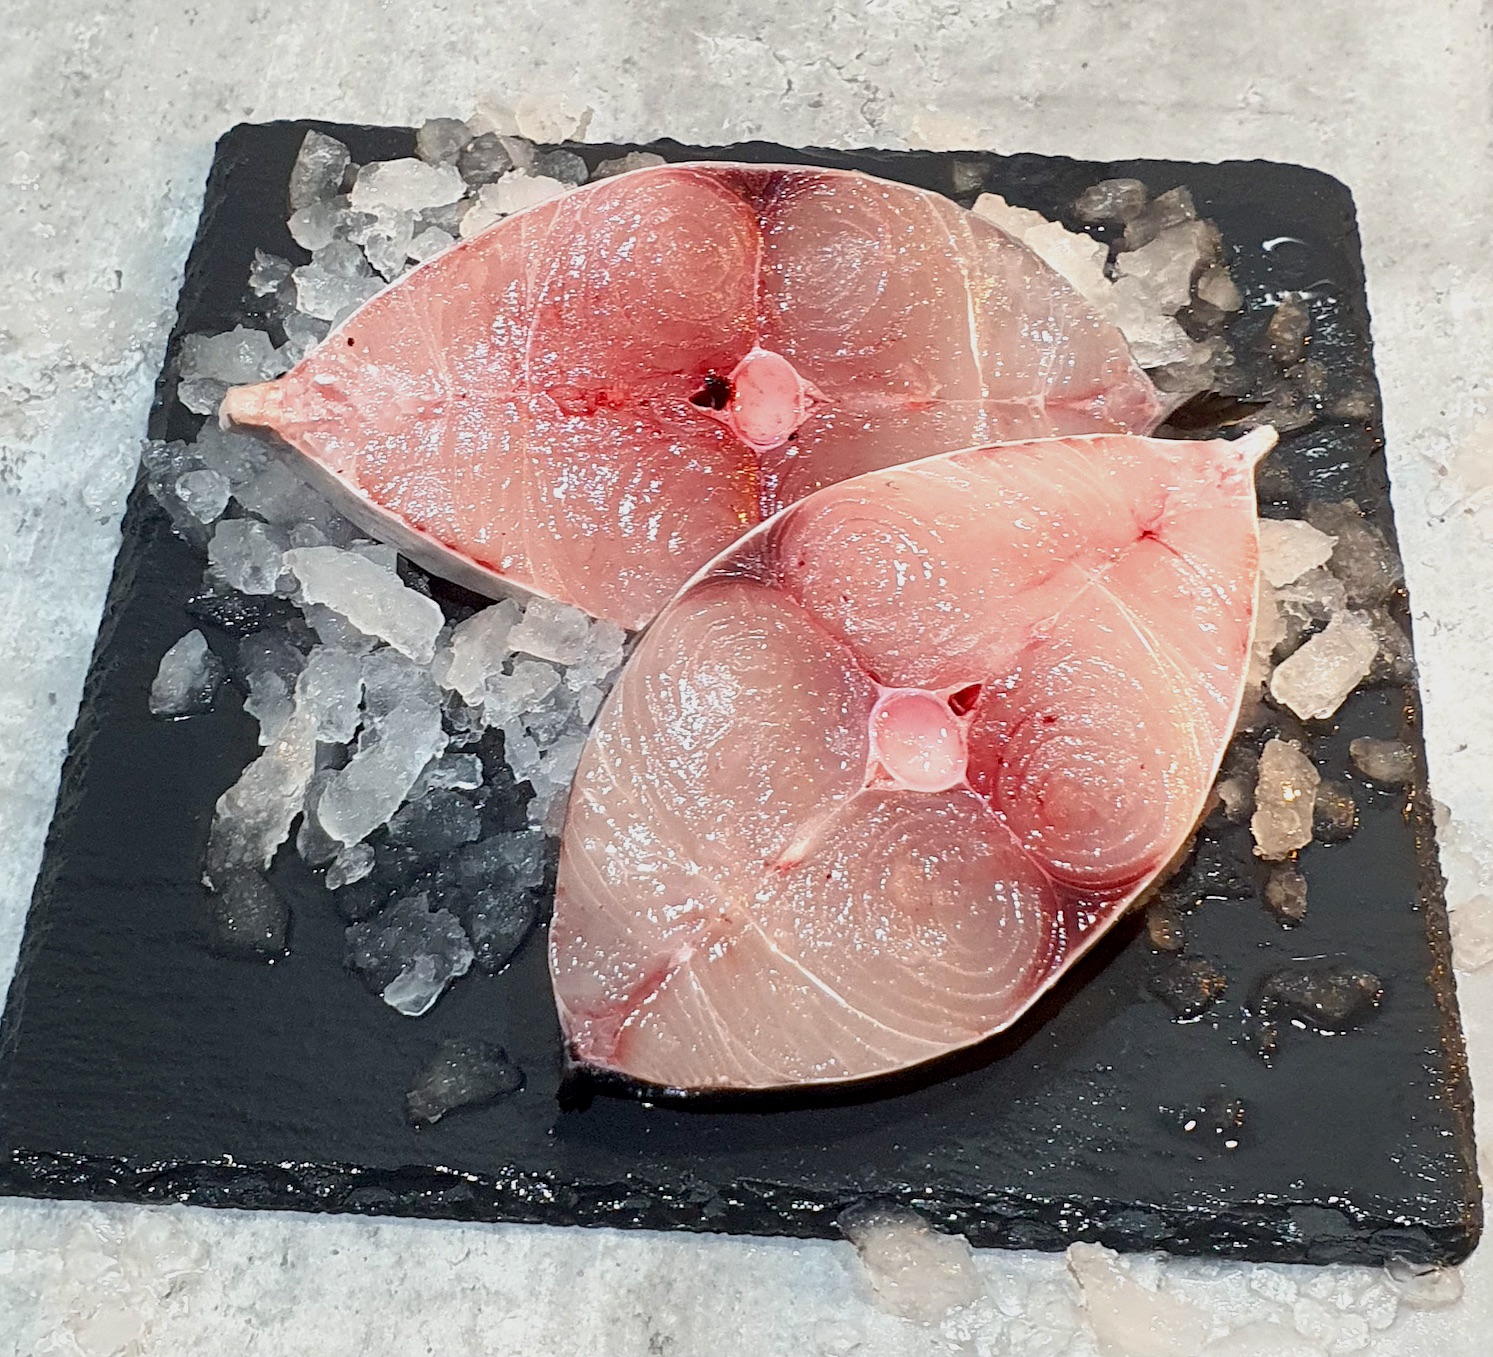 King Mackerel Fish Batang Steak Freshly Cut 巴当鱼块